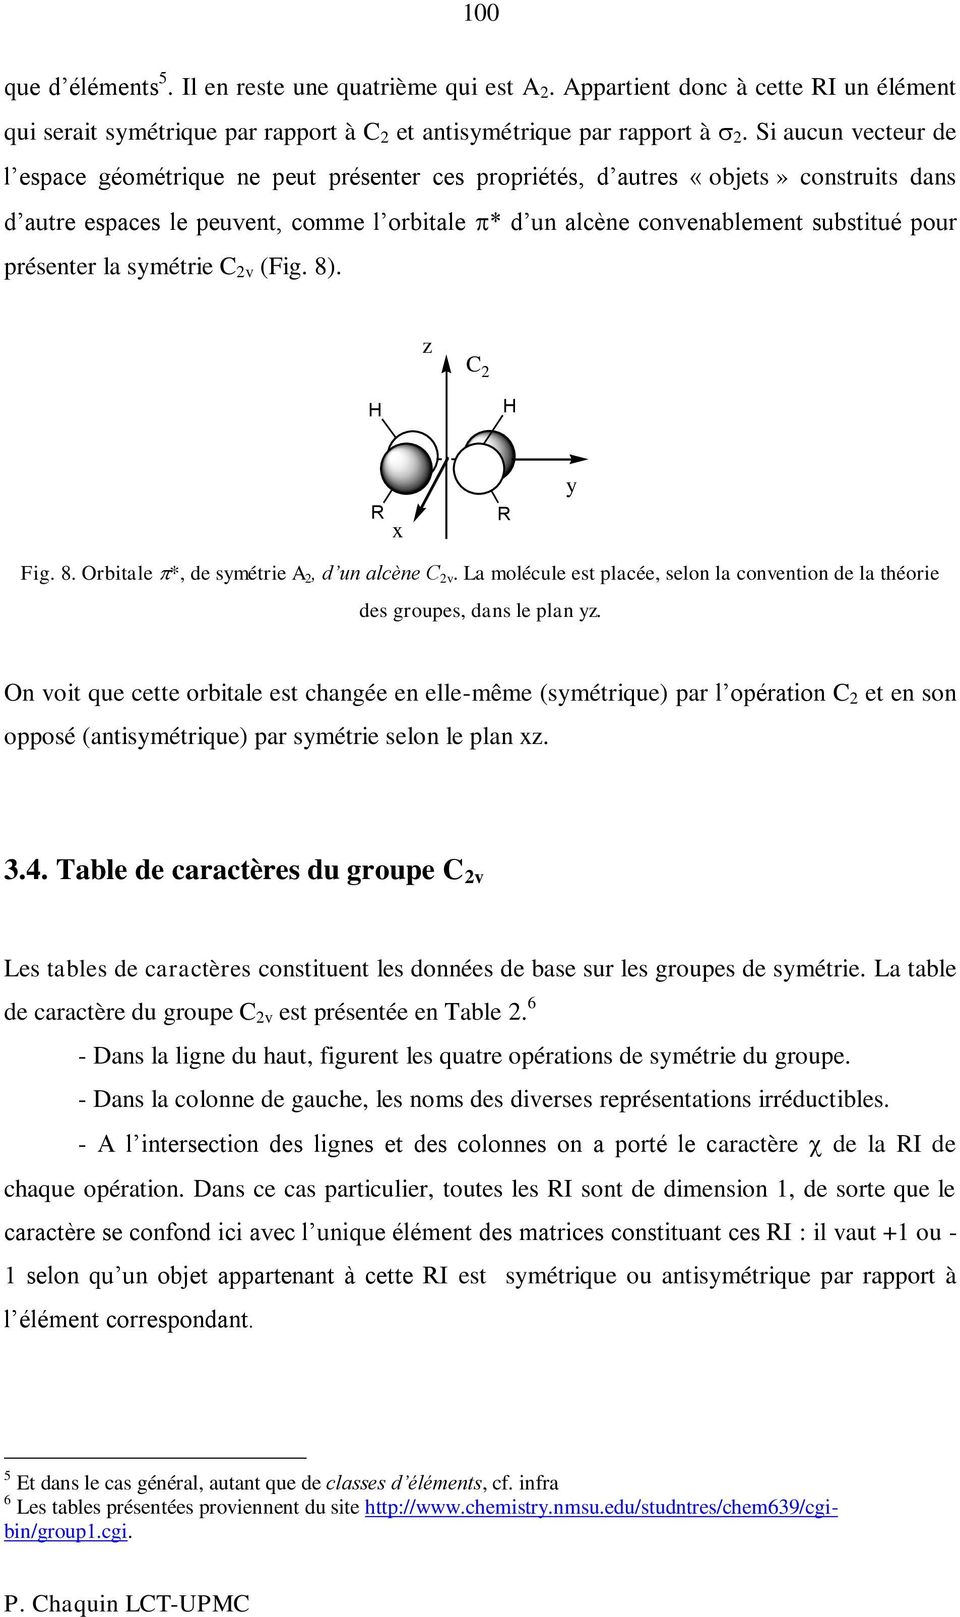 (Fig. 8). C R R Fig. 8. rbitale *, de métrie A, d un alcène C v. La molécule et lacée, elon la convention de la théorie de groue, dan le lan.